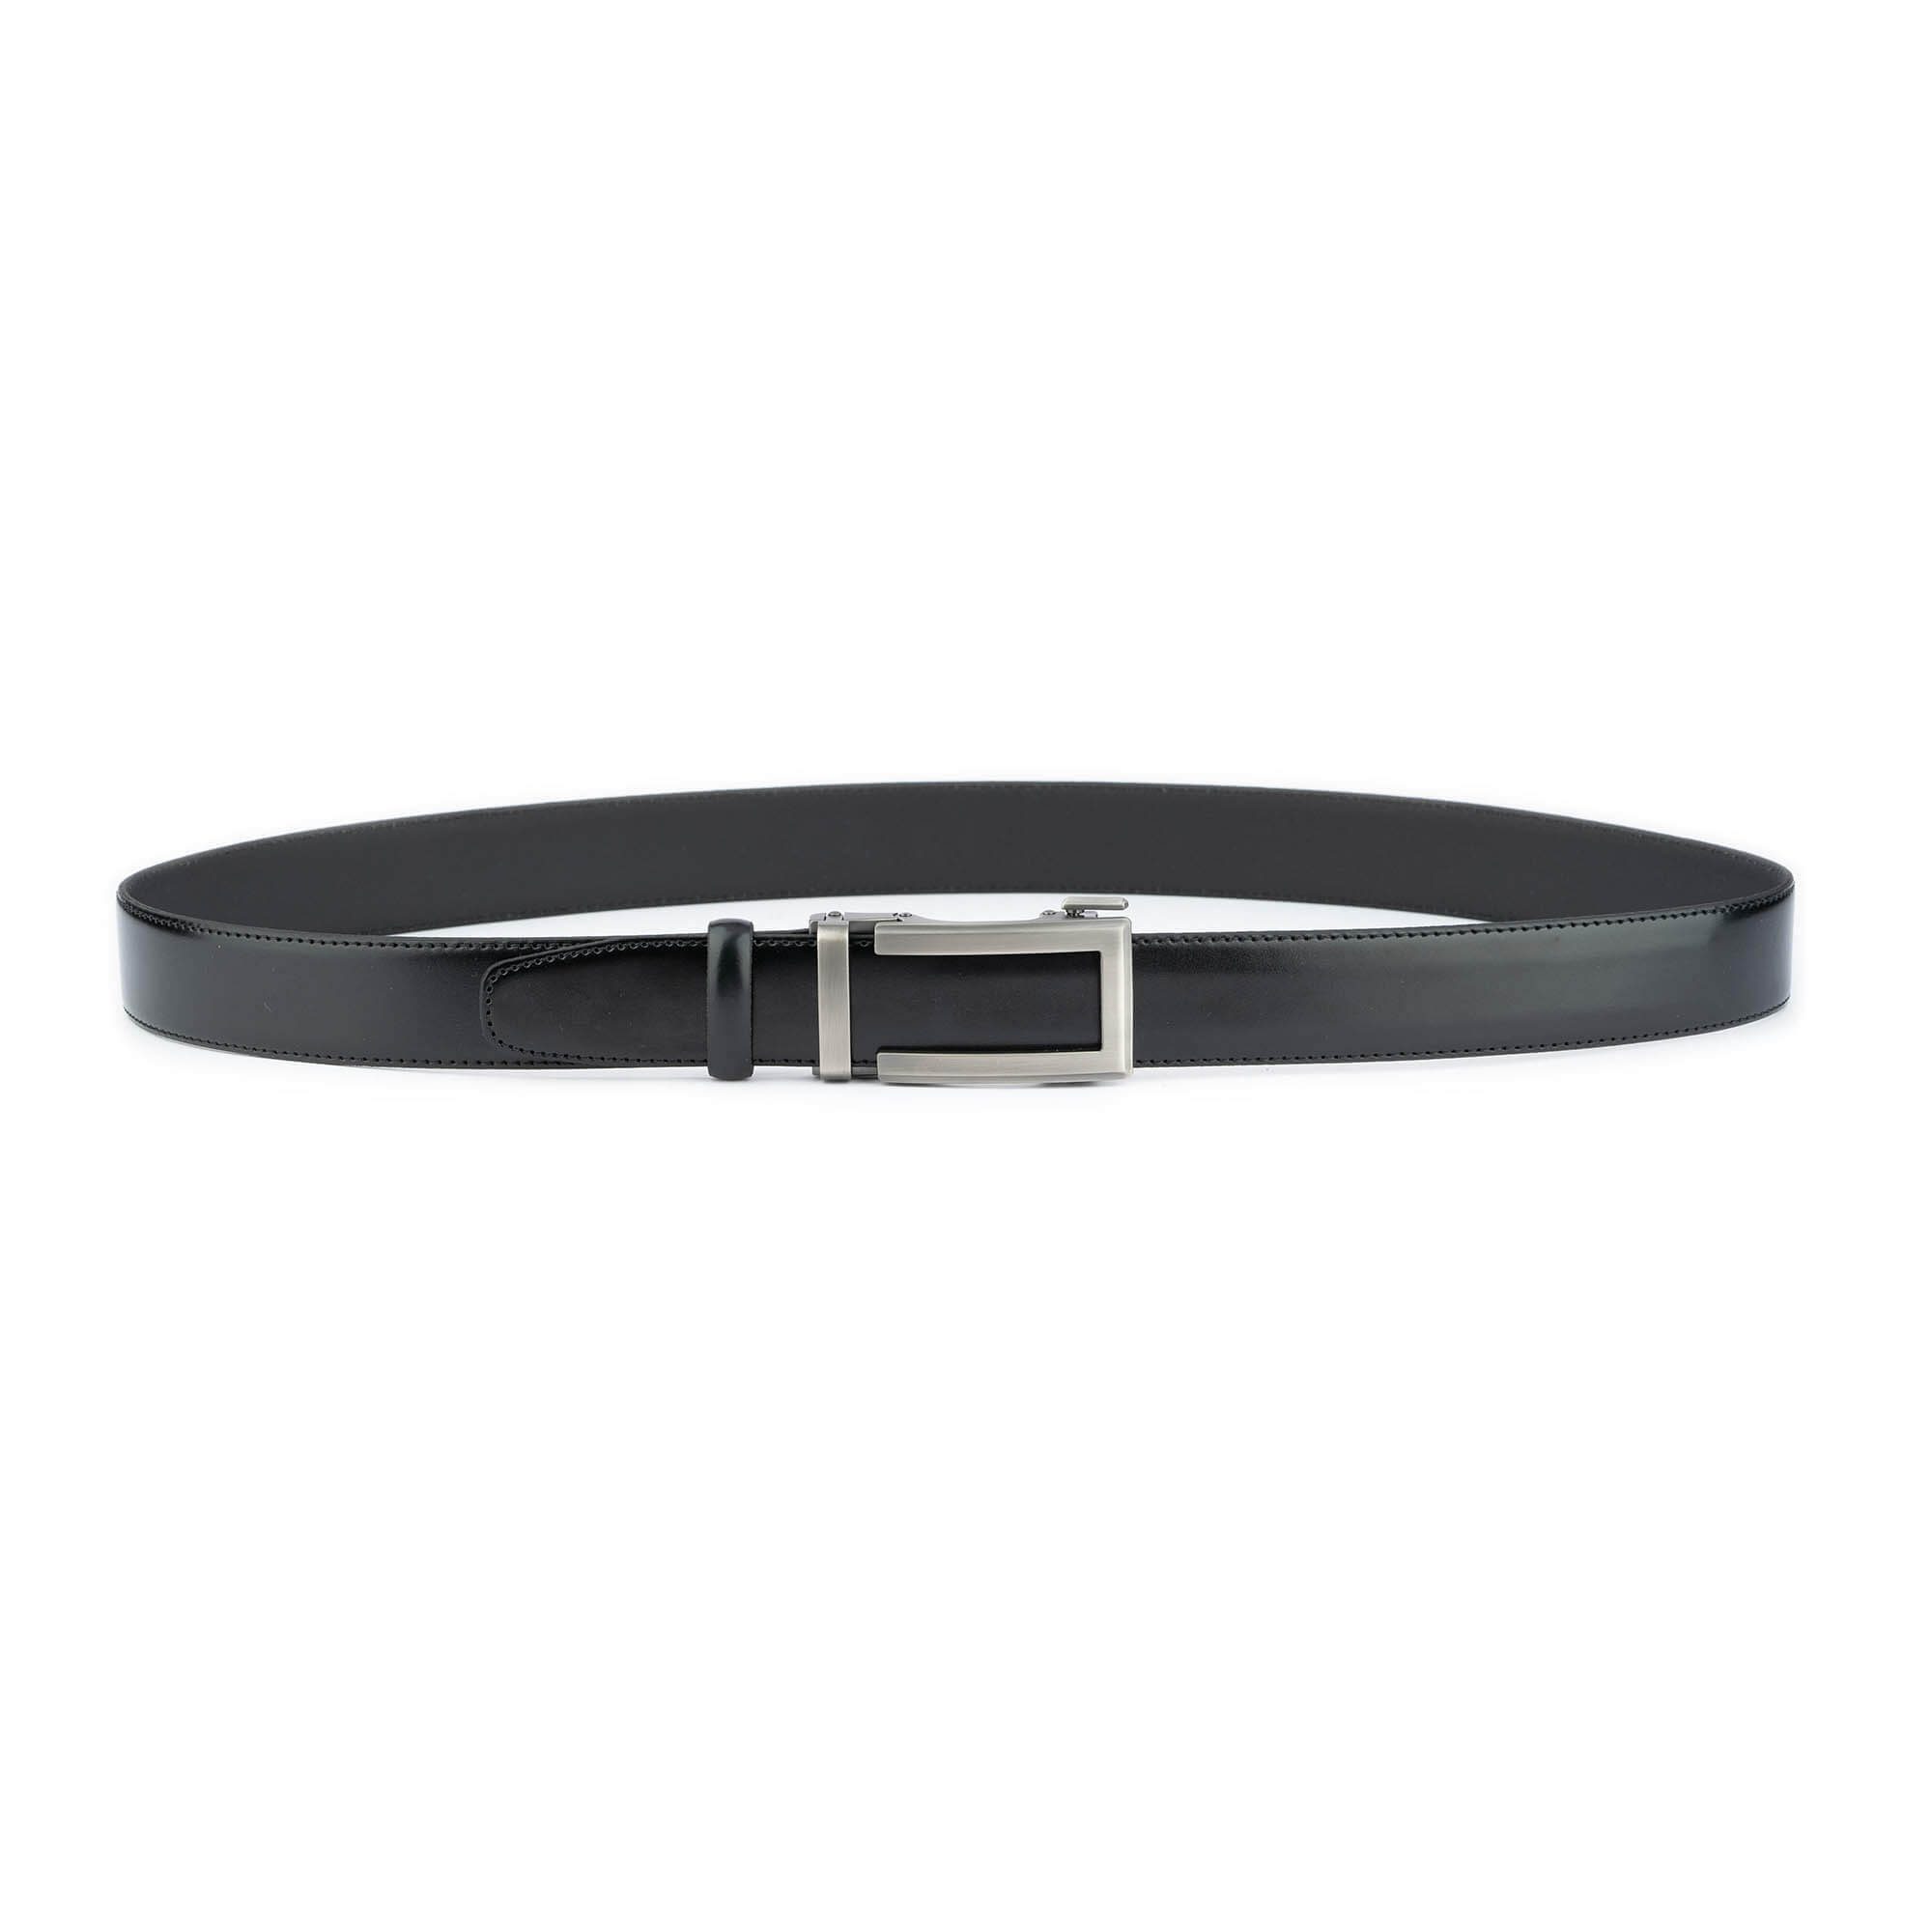 Buy Mens Black Leather Belt With Slide Buckle - LeatherBeltsOnline.com